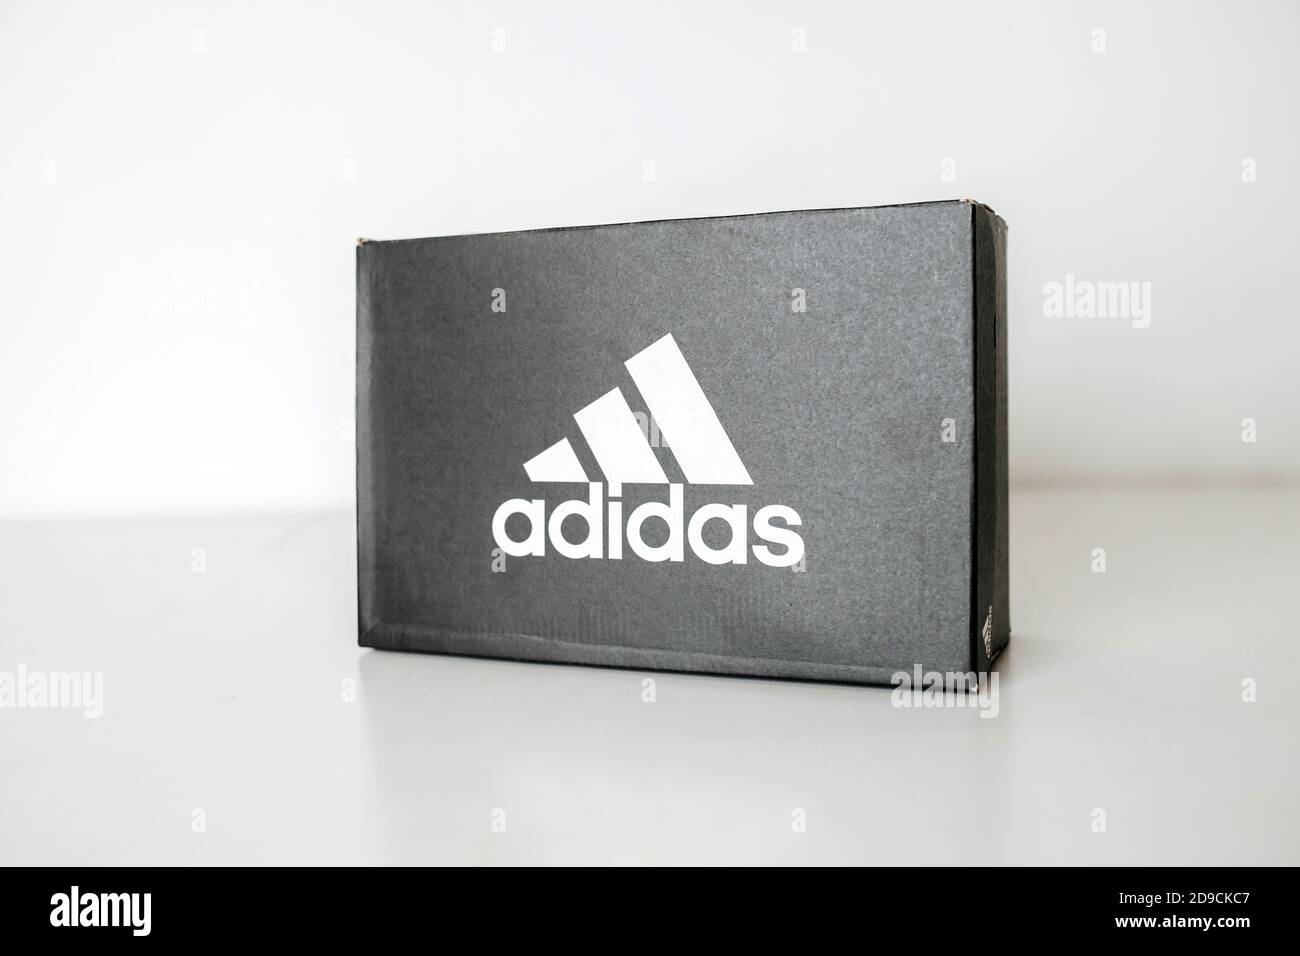 RUSSIE, UFA - 02 NOVEMBRE 2020 : boîte à chaussures adidas noires sur table blanche Banque D'Images